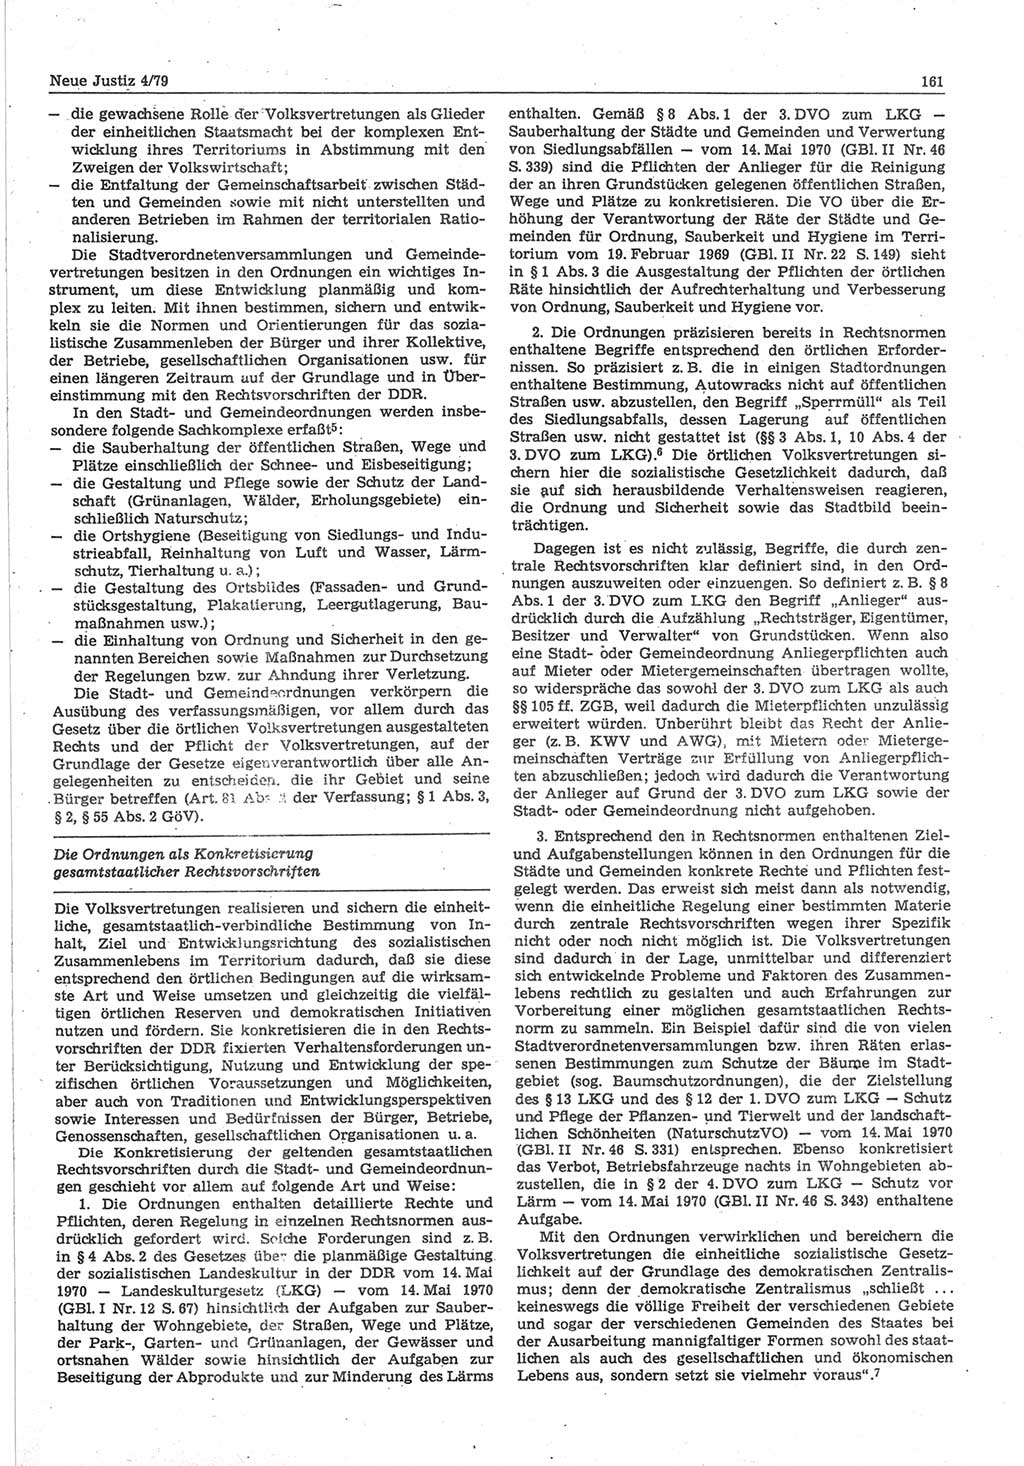 Neue Justiz (NJ), Zeitschrift für sozialistisches Recht und Gesetzlichkeit [Deutsche Demokratische Republik (DDR)], 33. Jahrgang 1979, Seite 161 (NJ DDR 1979, S. 161)